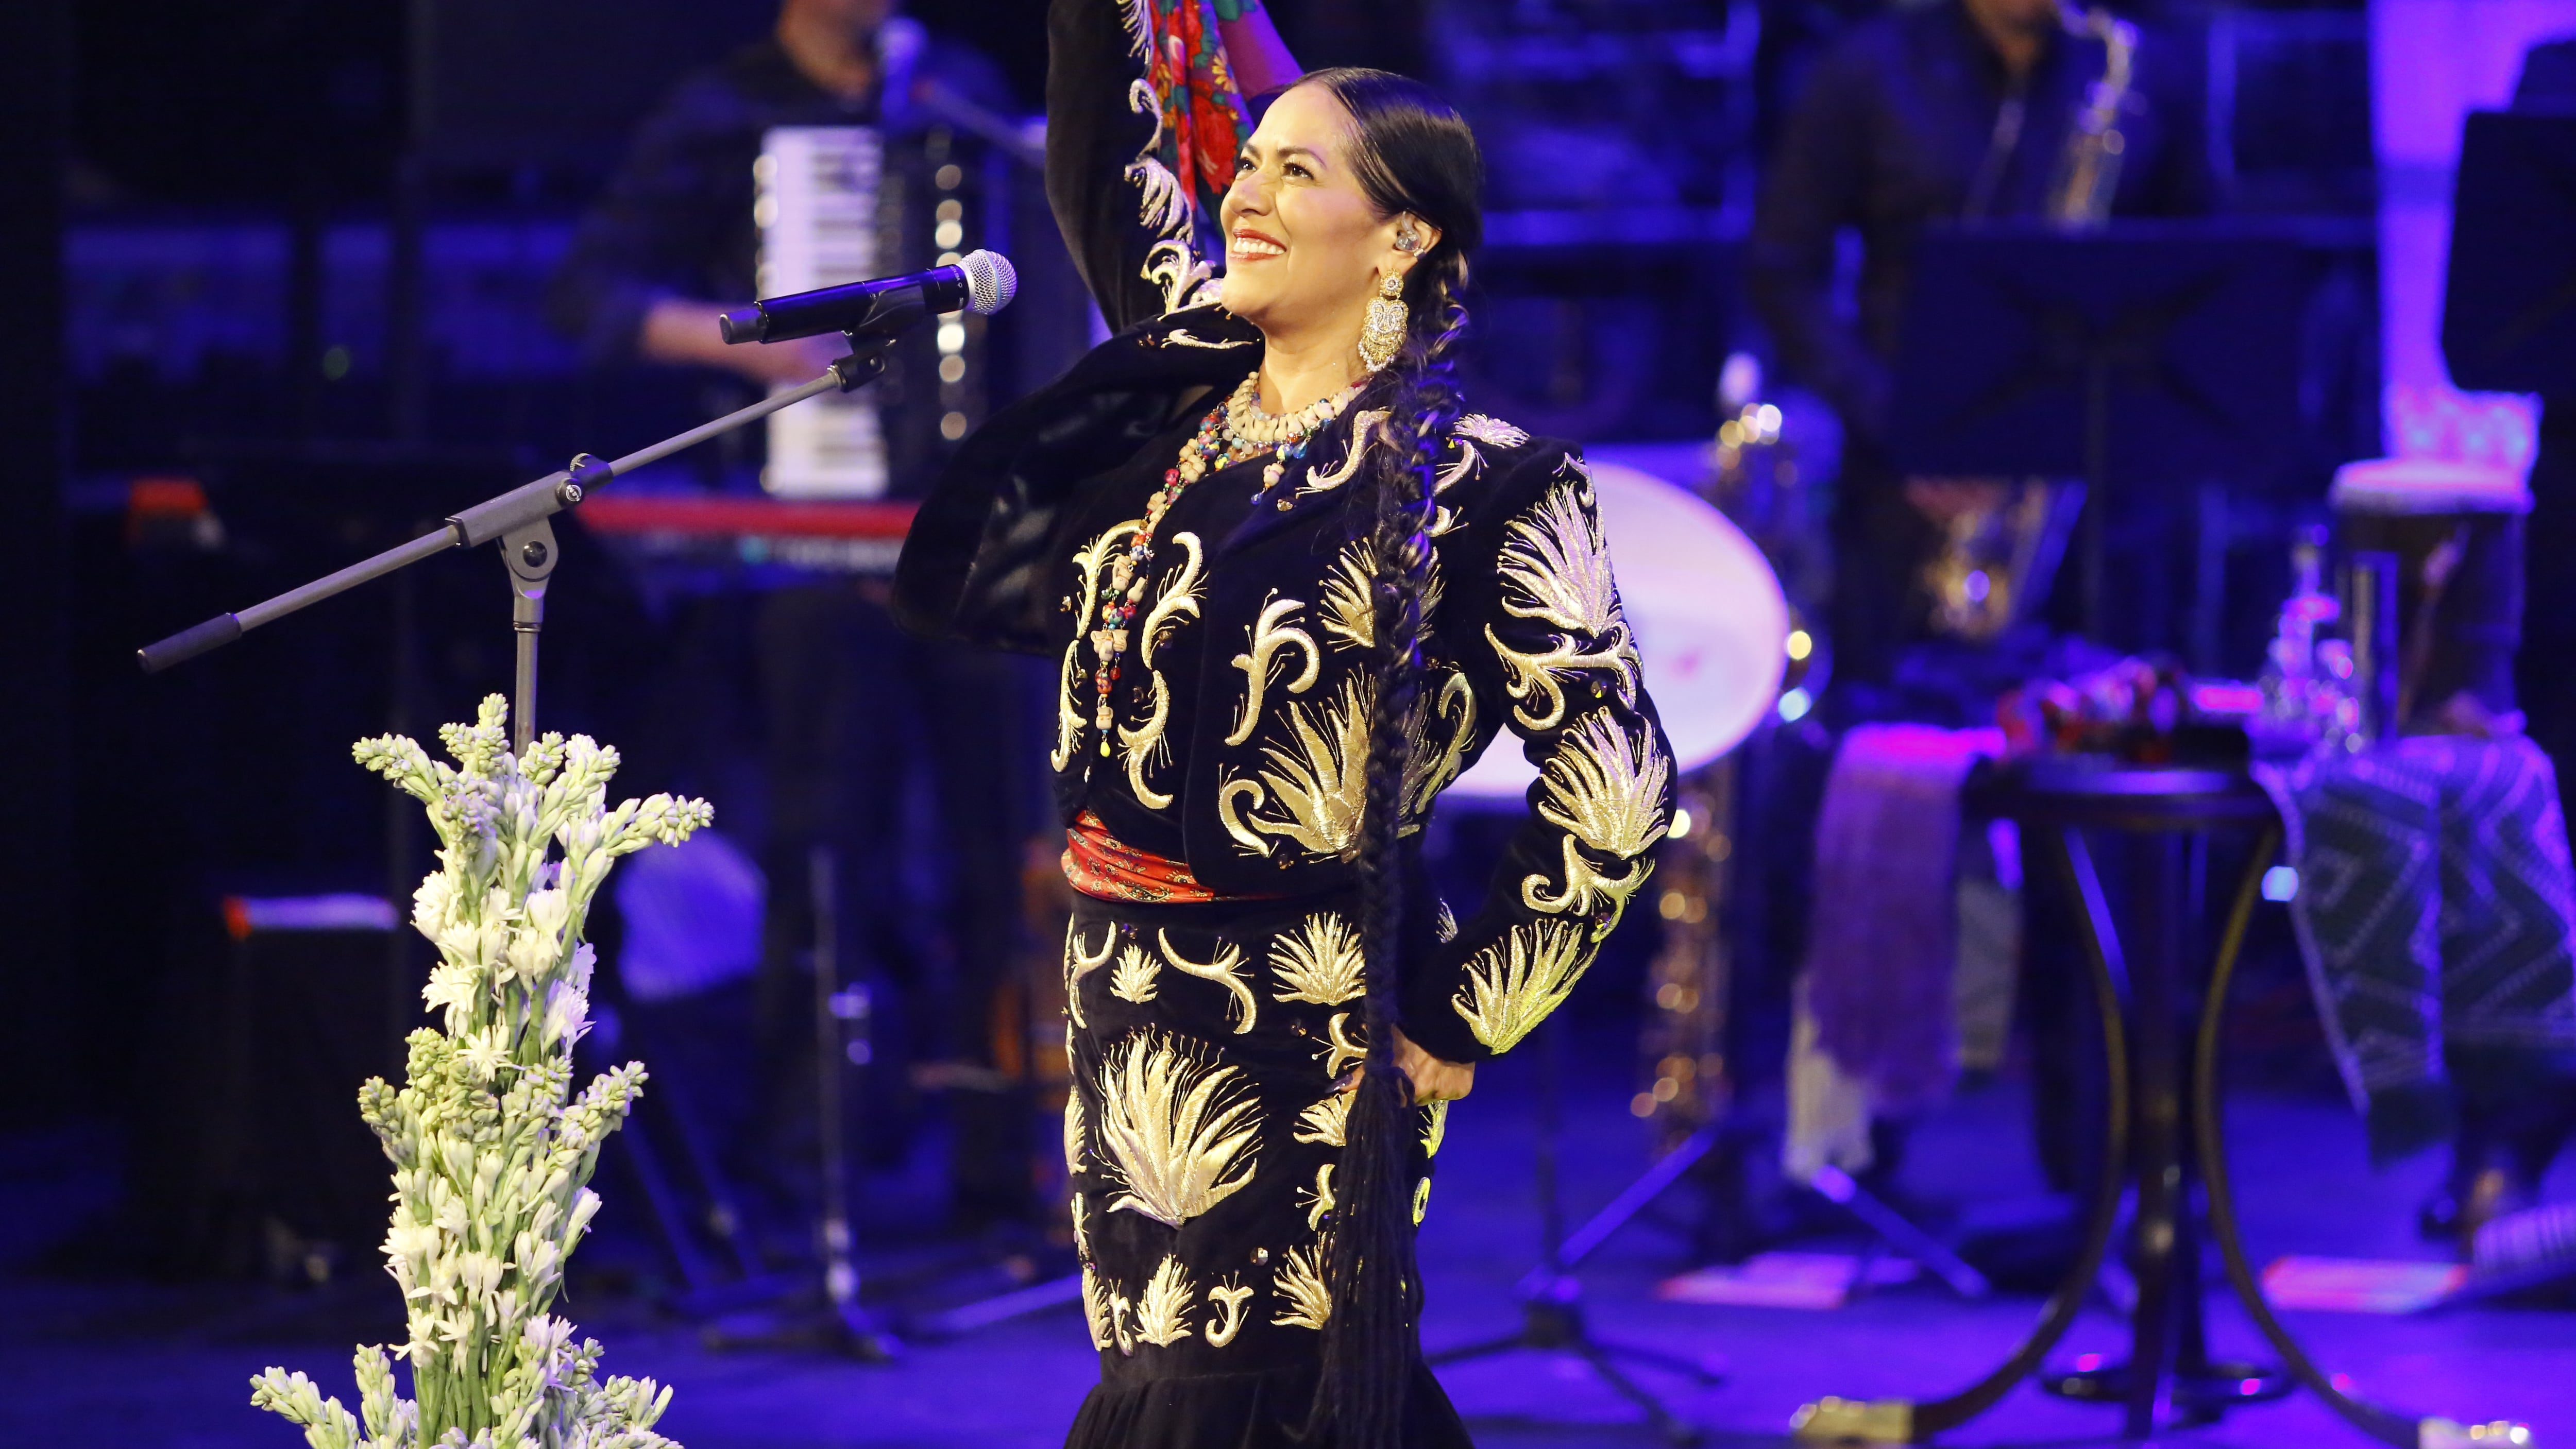 La antropóloga, cantante y compositora ganadora de 6 Premios Latin Grammy y 1 Premio Grammy presenta una propuesta en directo desde el Palacio de Bellas Artes.